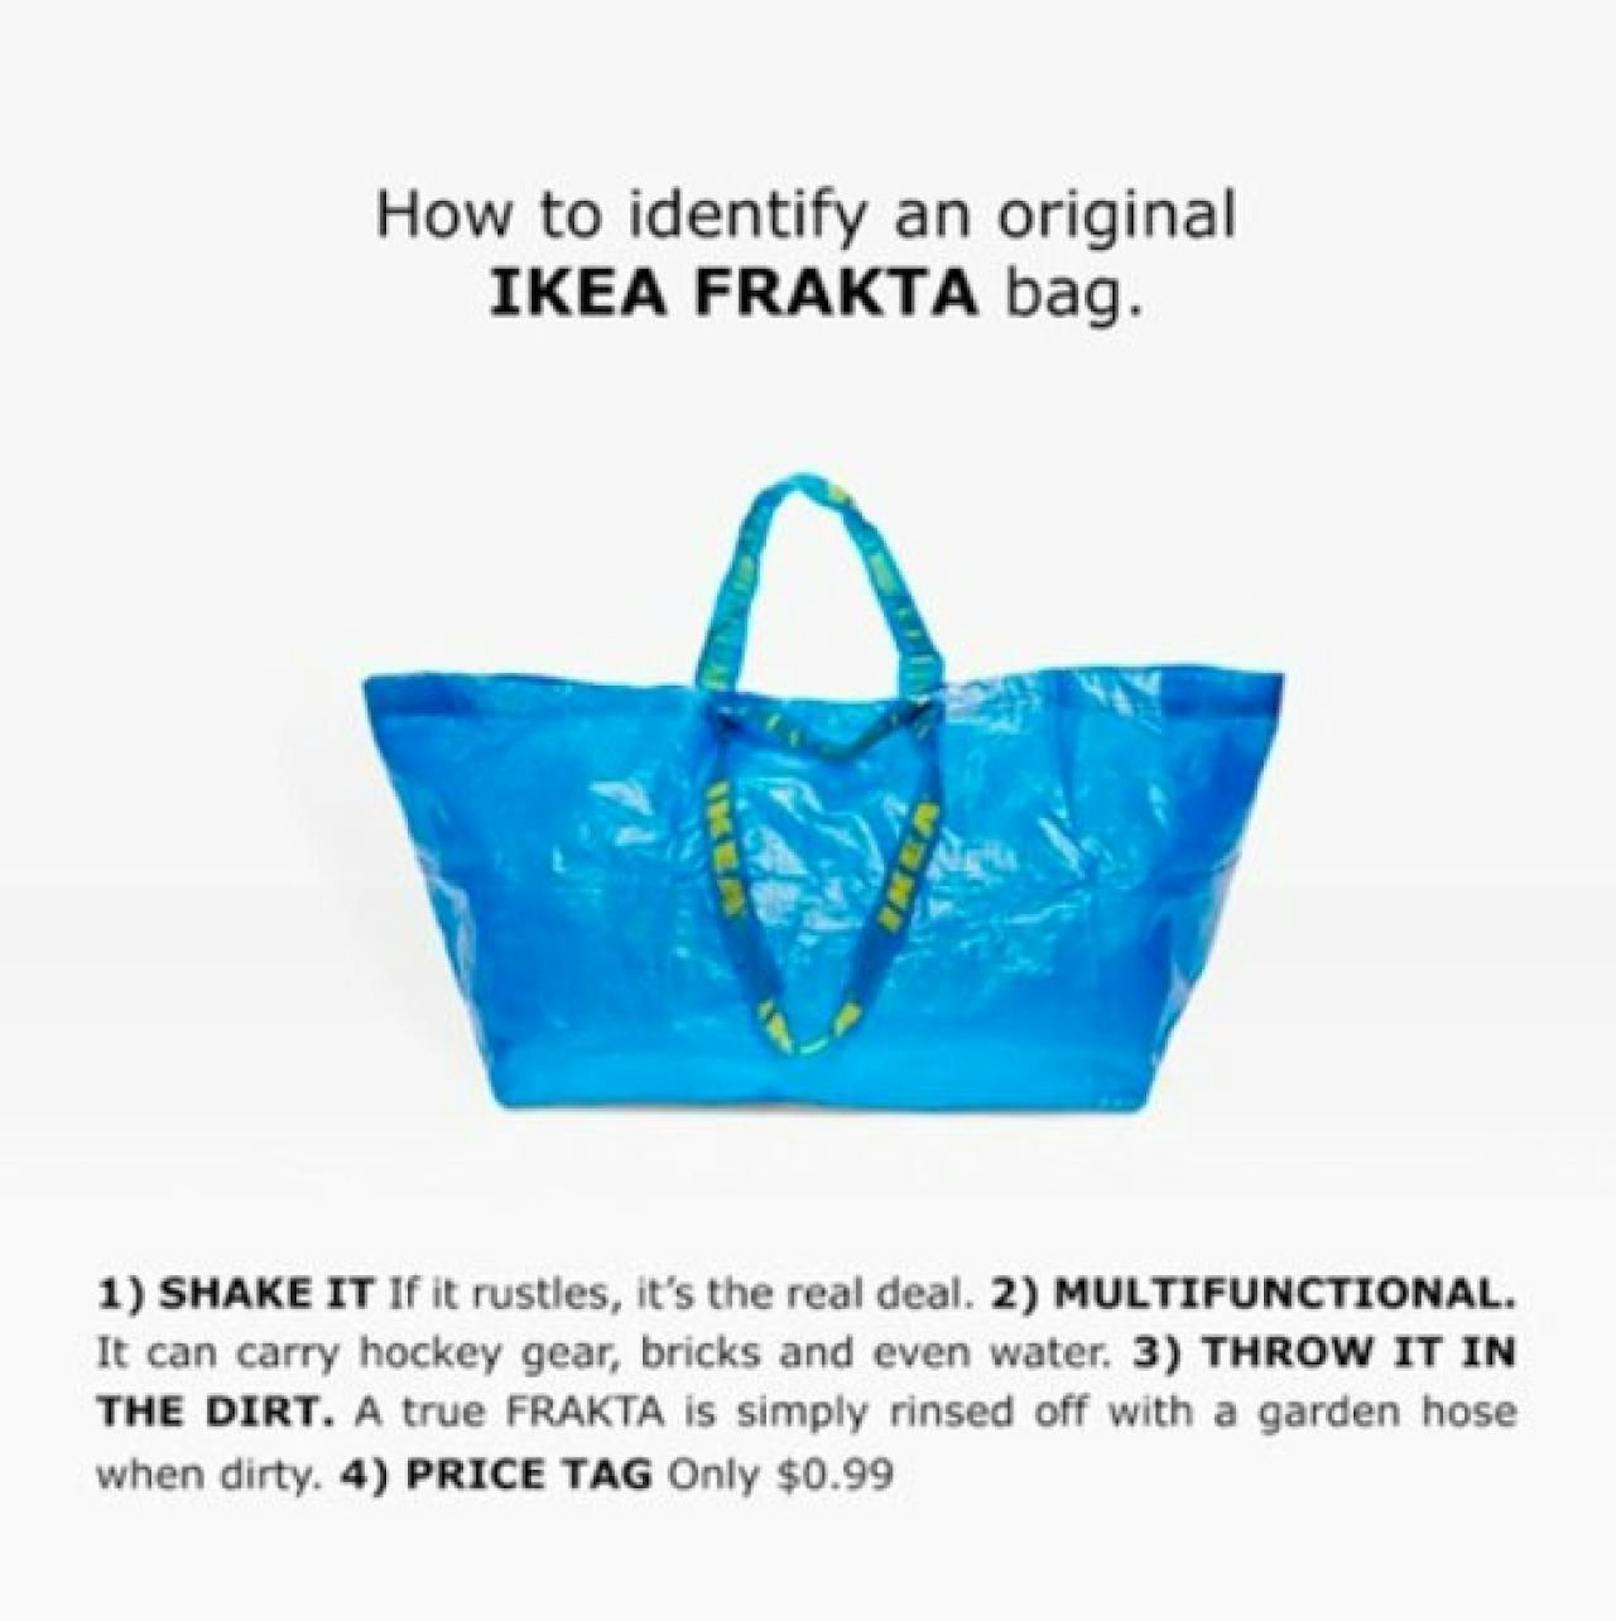 IKEA beweist mit seiner neuesten Social Media Werbung Humor